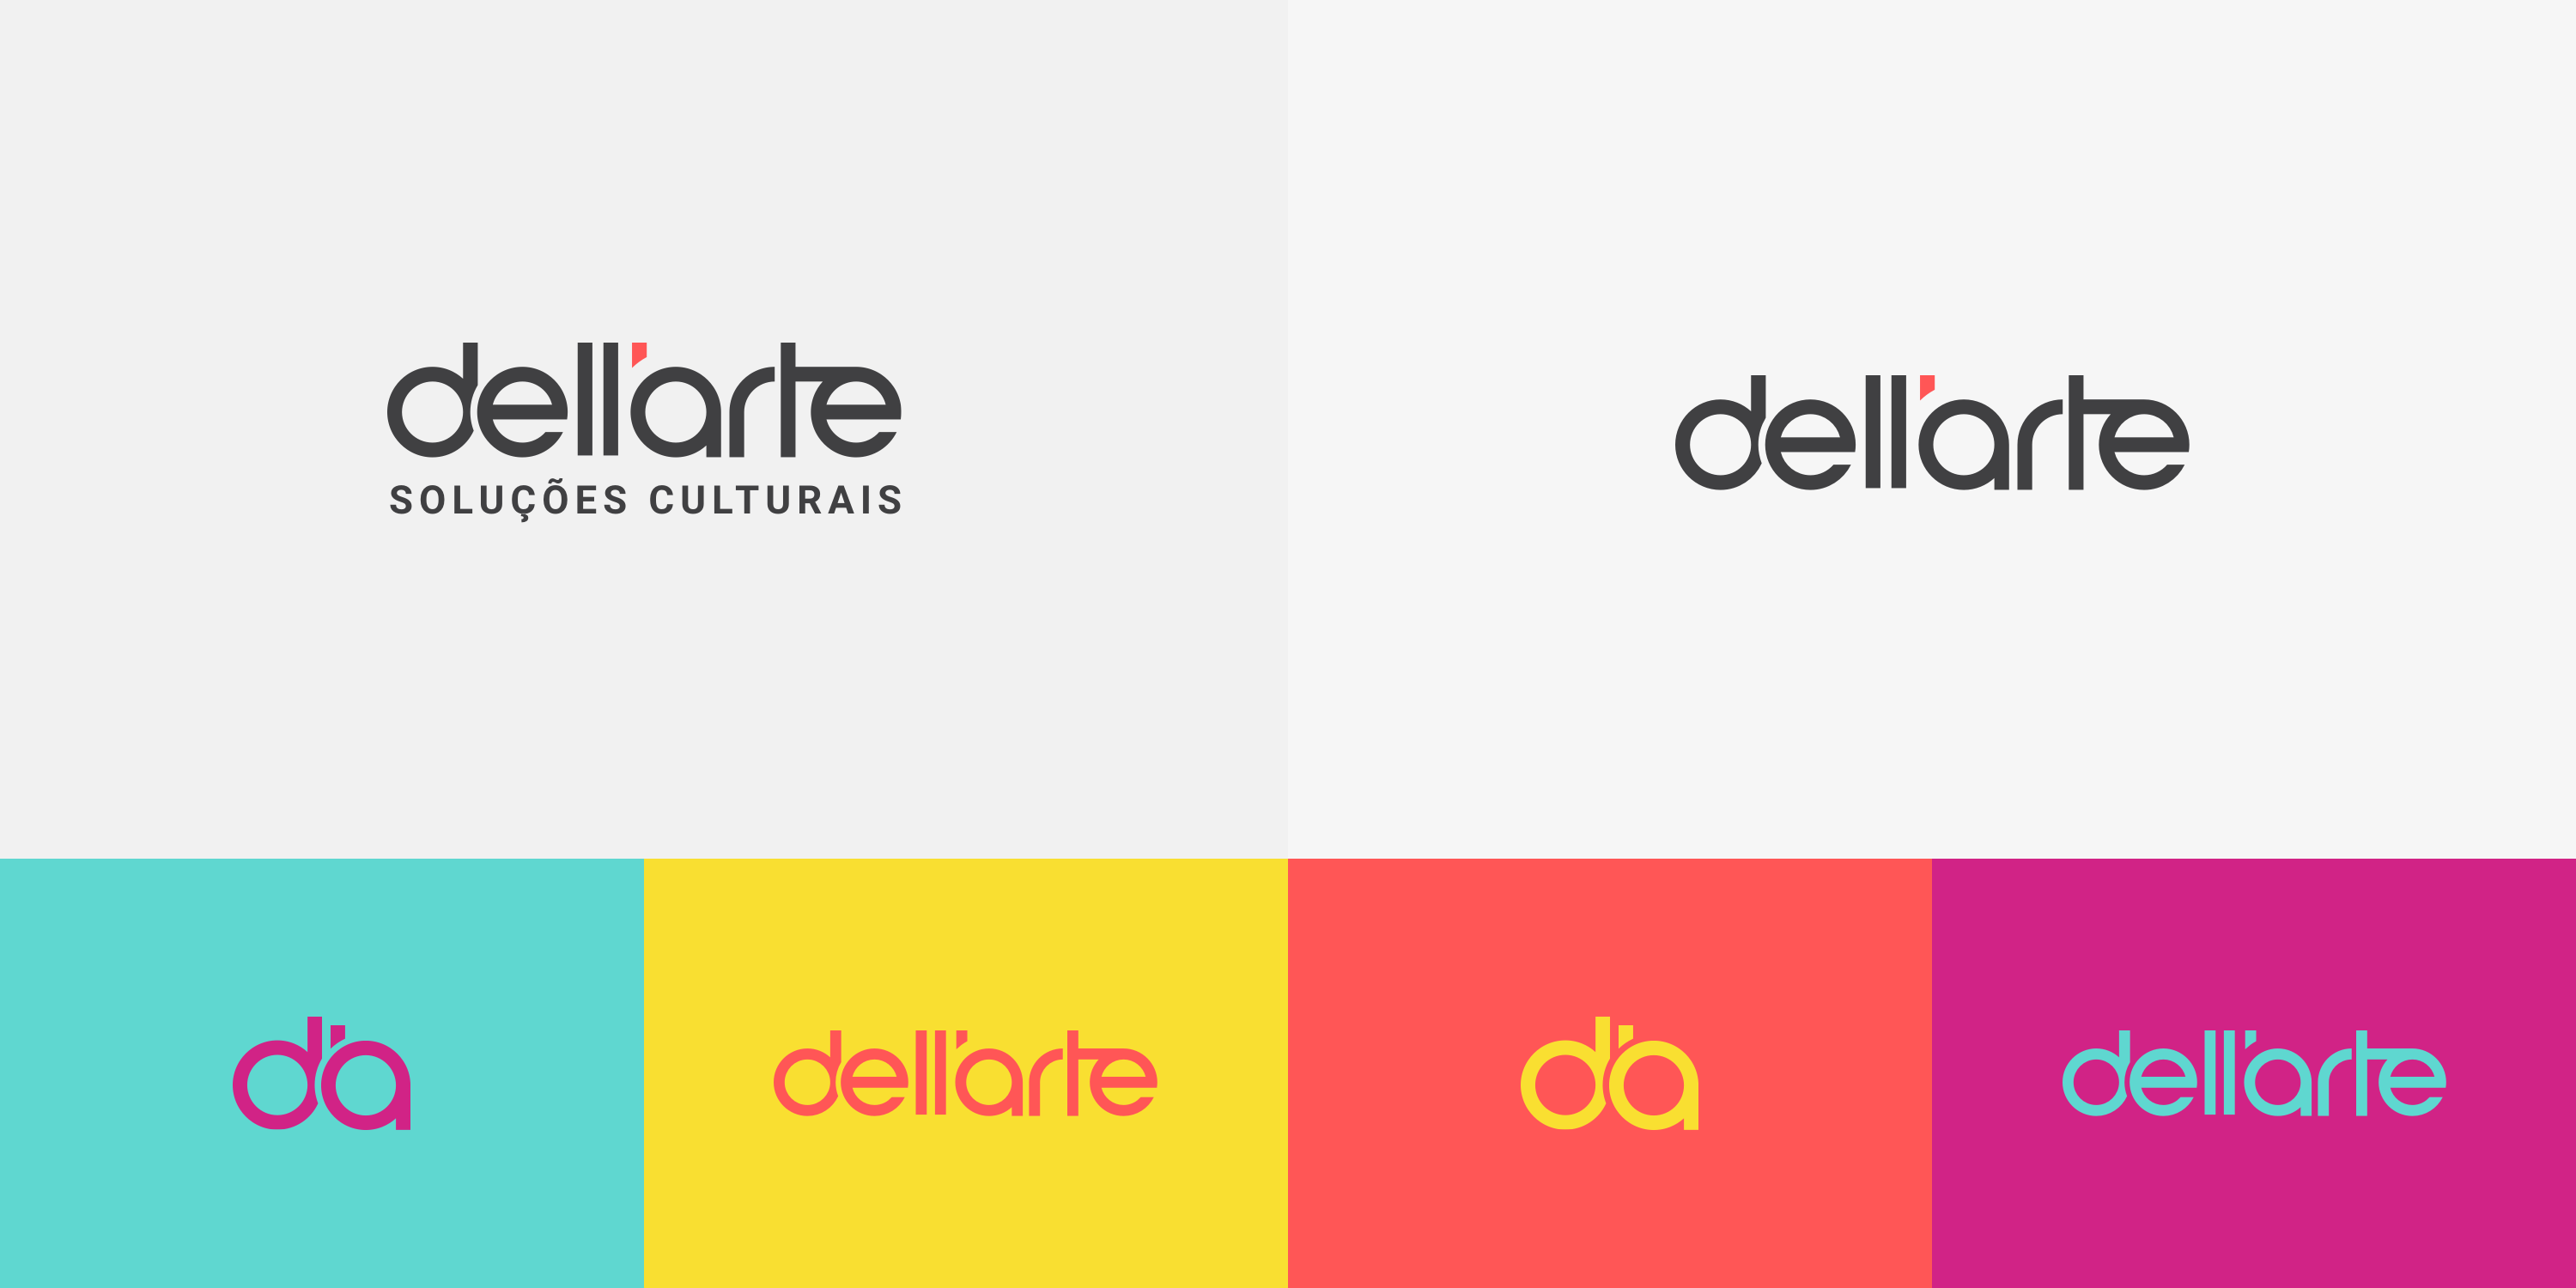 dellarte brand variations